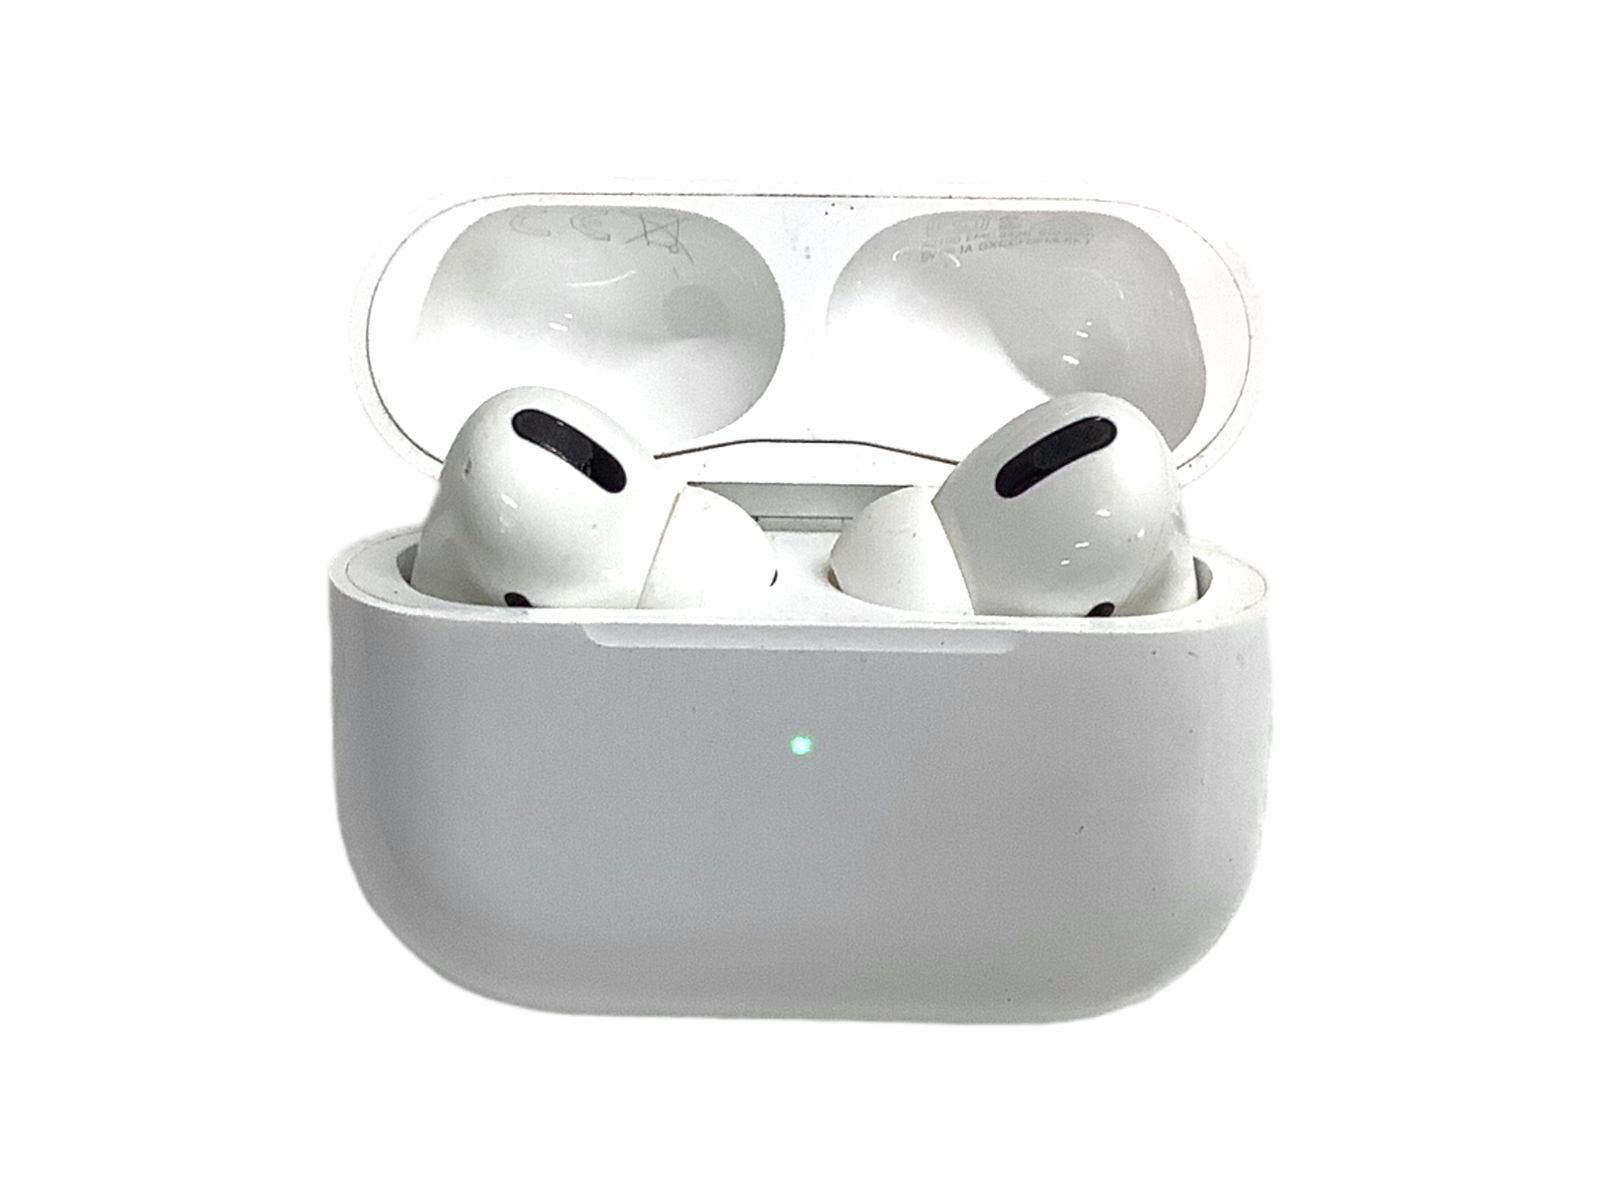 Apple (アップル) airpods pro エアポッズプロ ワイヤレスイヤホン A2190 MWP22J/A ホワイト 家電/091 - メルカリ